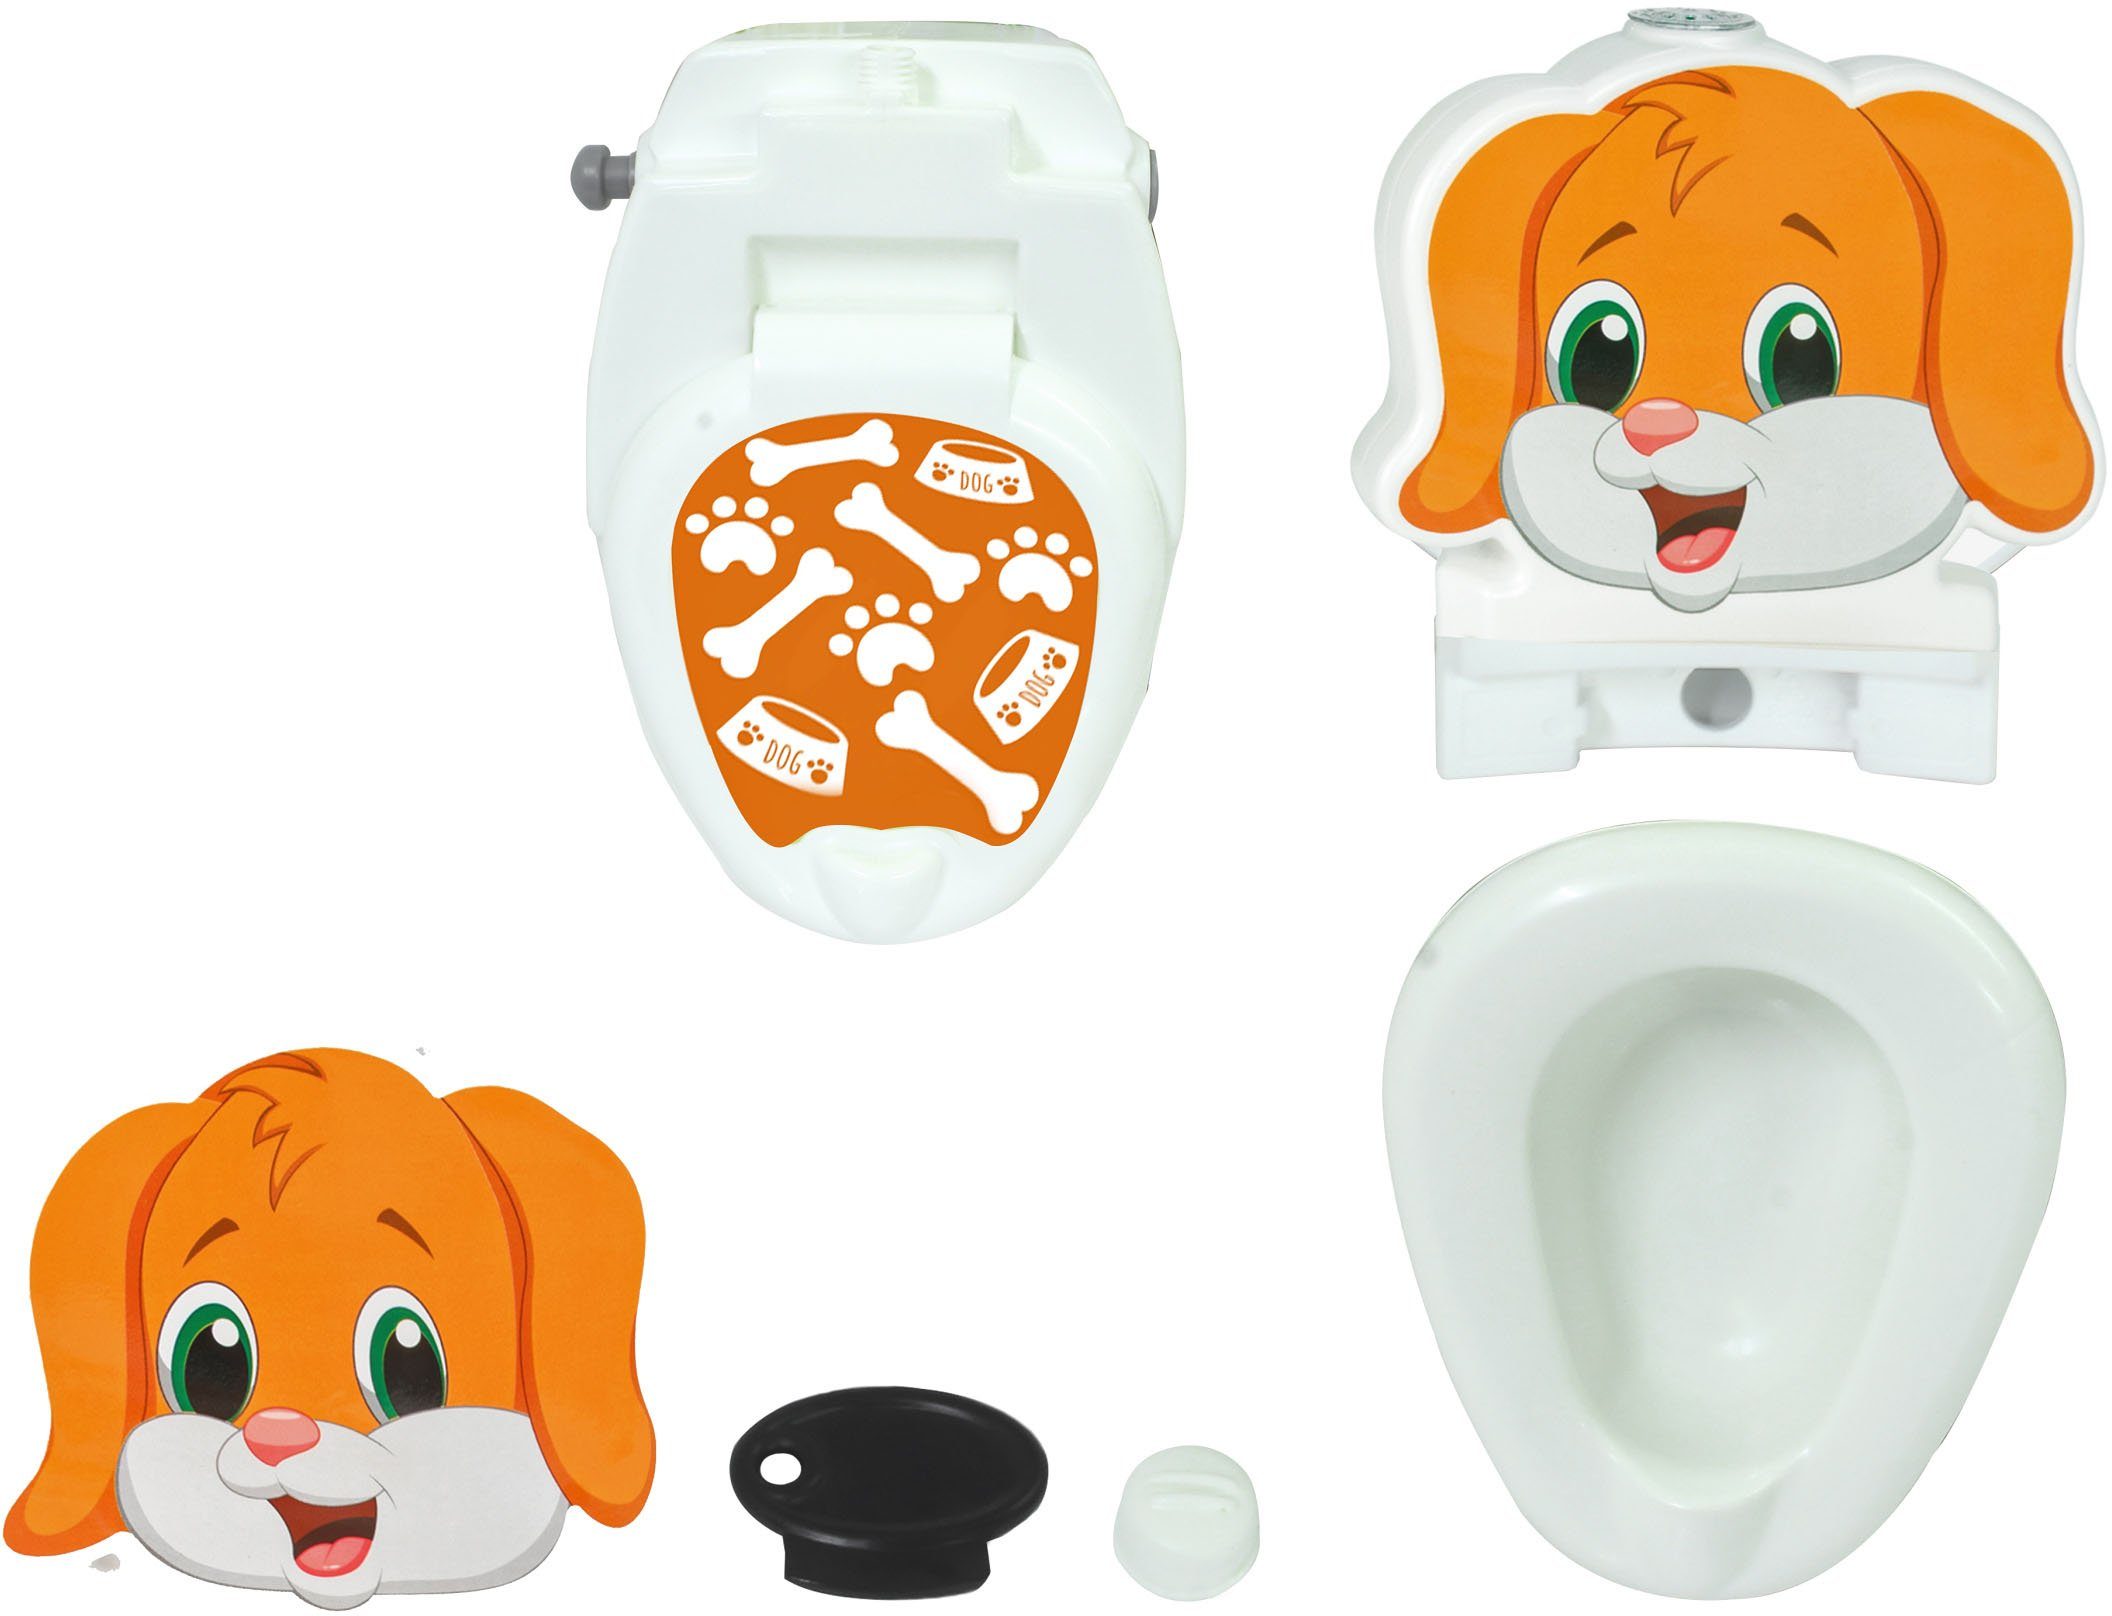 Jamara Toilettentrainer Meine kleine Toilette, mit Spülsound Toilettenpapierhalter Hund, und